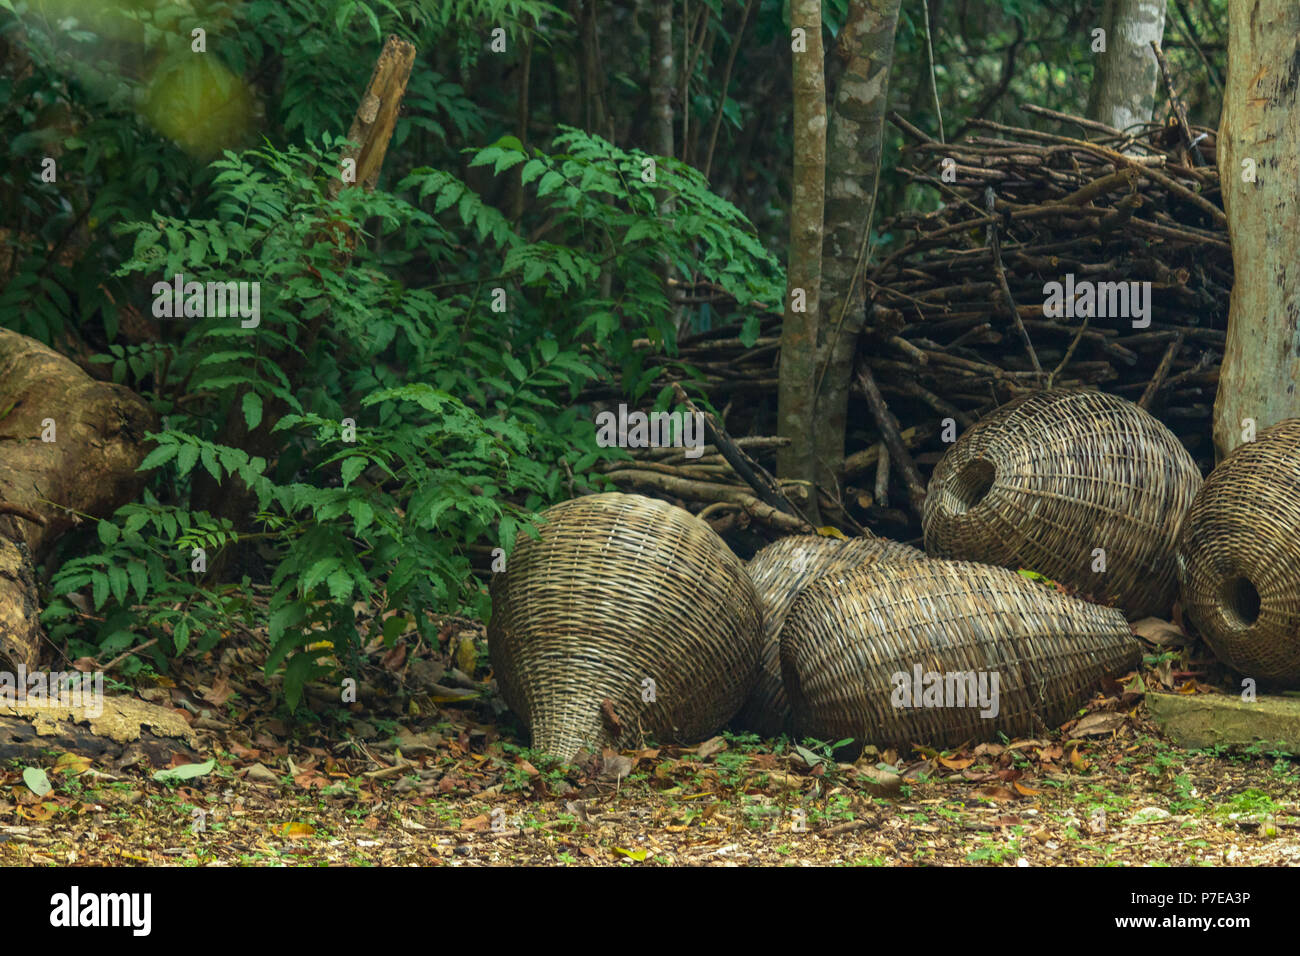 Des paniers en osier la jungle. Ils sont jetés négligemment à côté d'un bois de chauffage. Banque D'Images